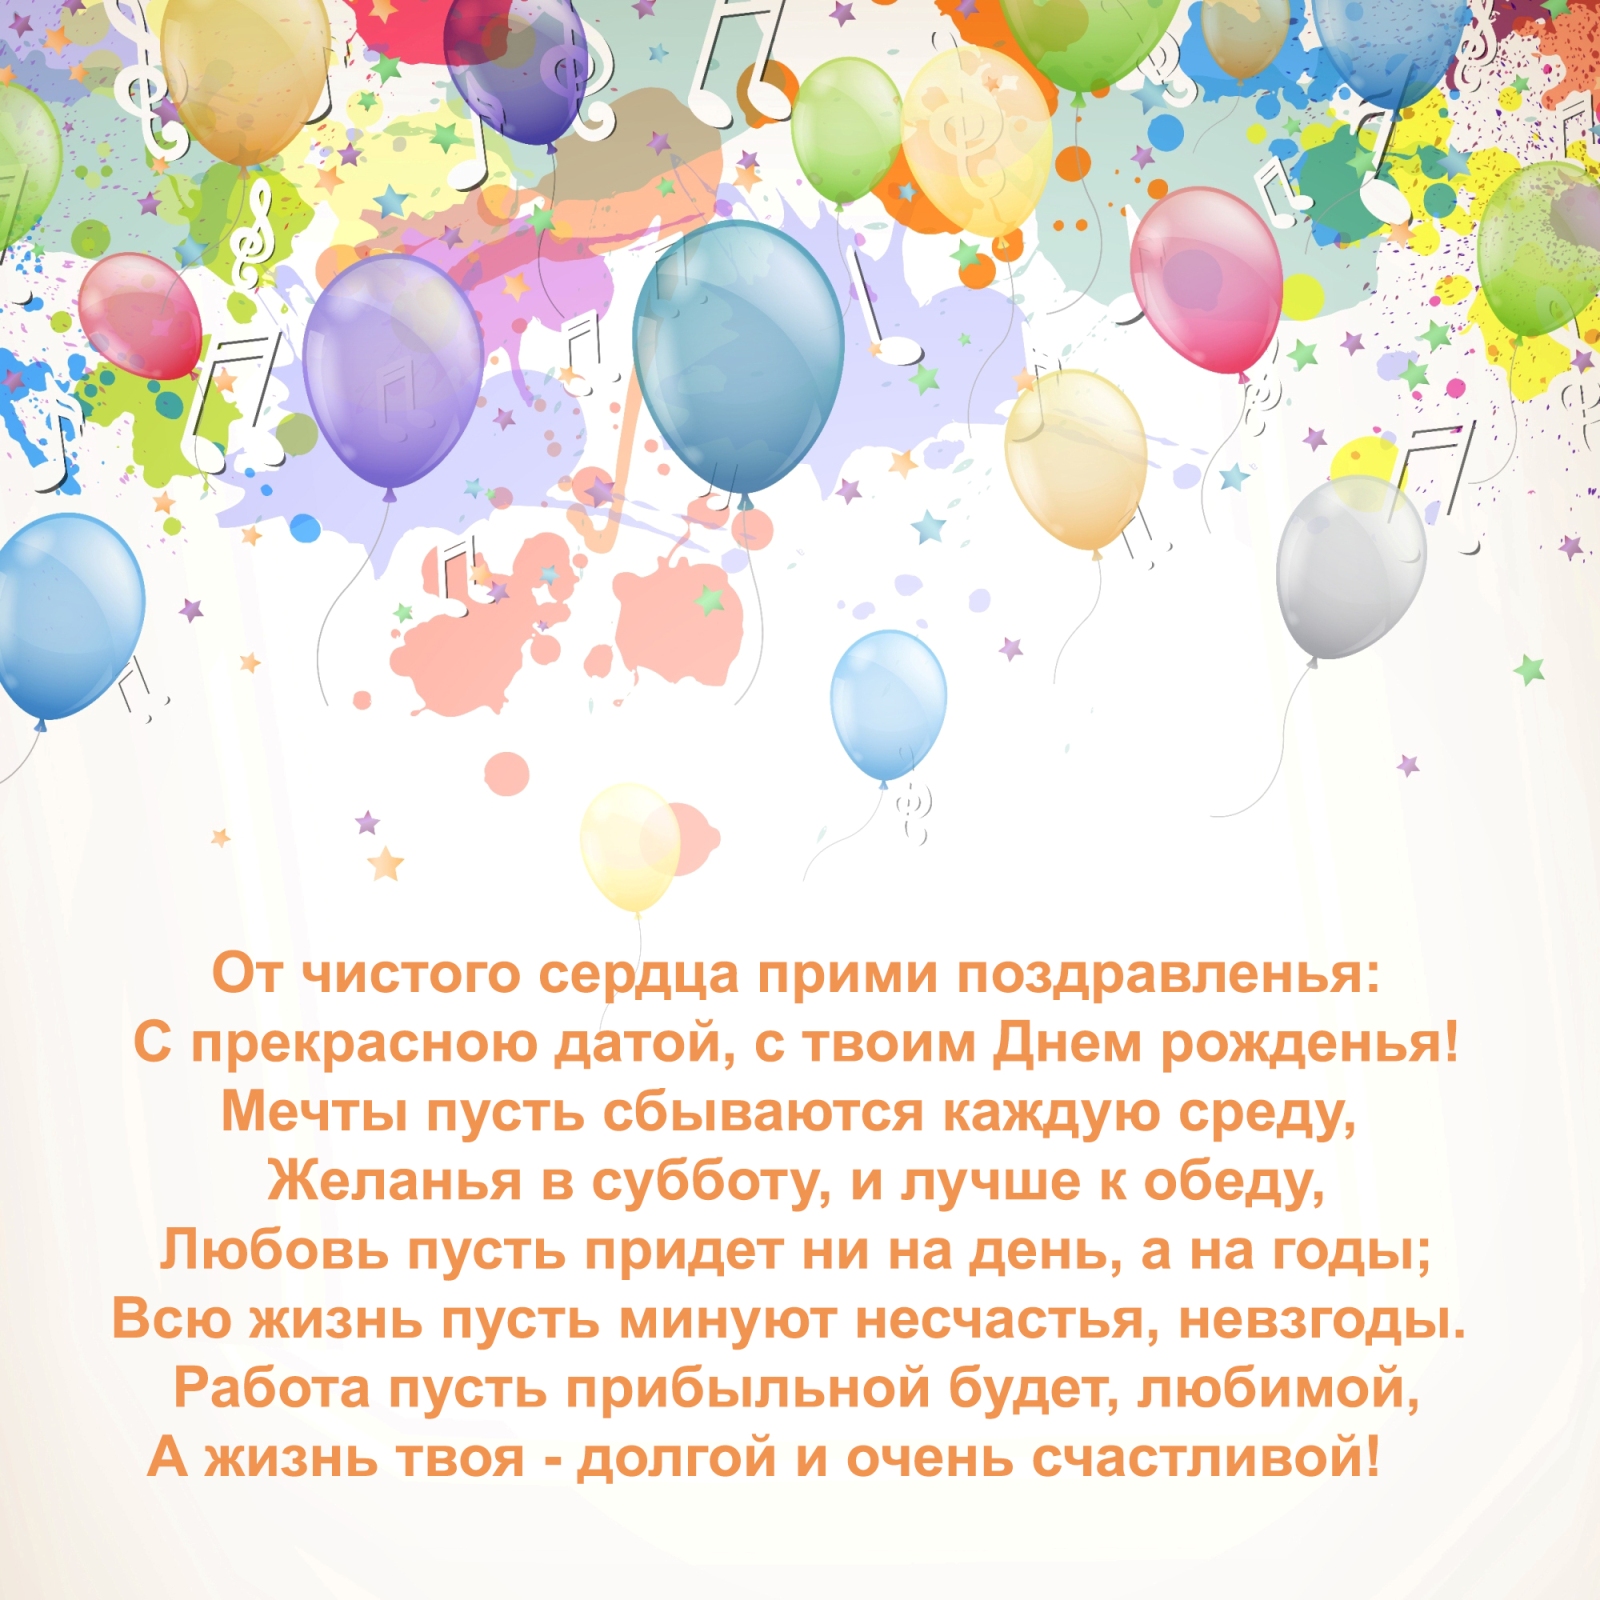 Поздравление с днем рождения своими словами • полный список поздравлений и пожеланий на любой праздник или торжество